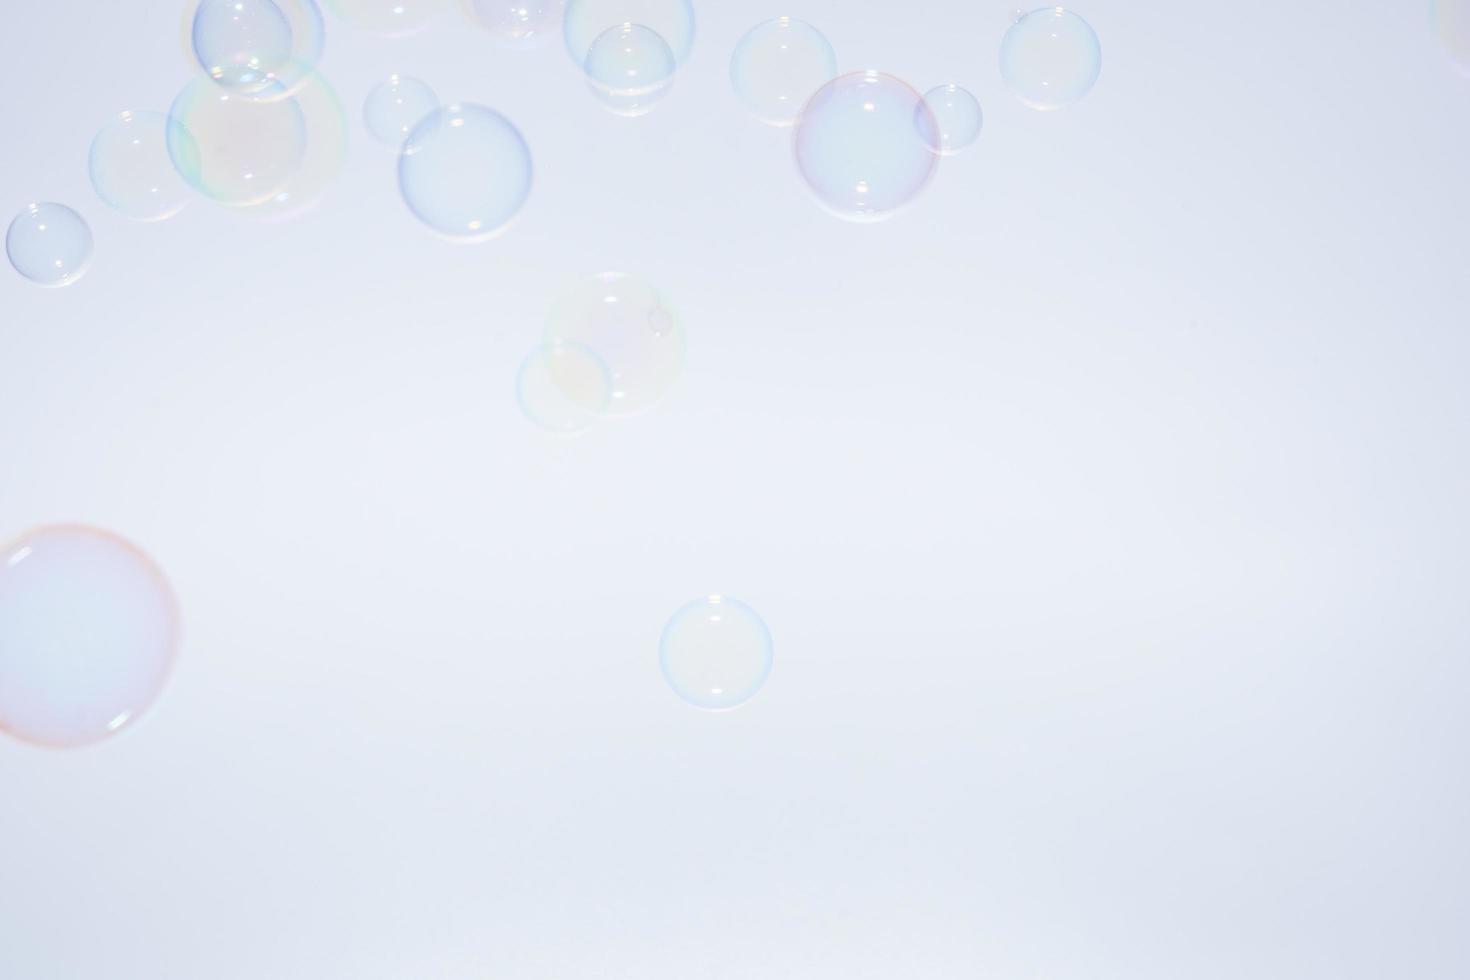 Blasen vor grauweißem Hintergrund foto